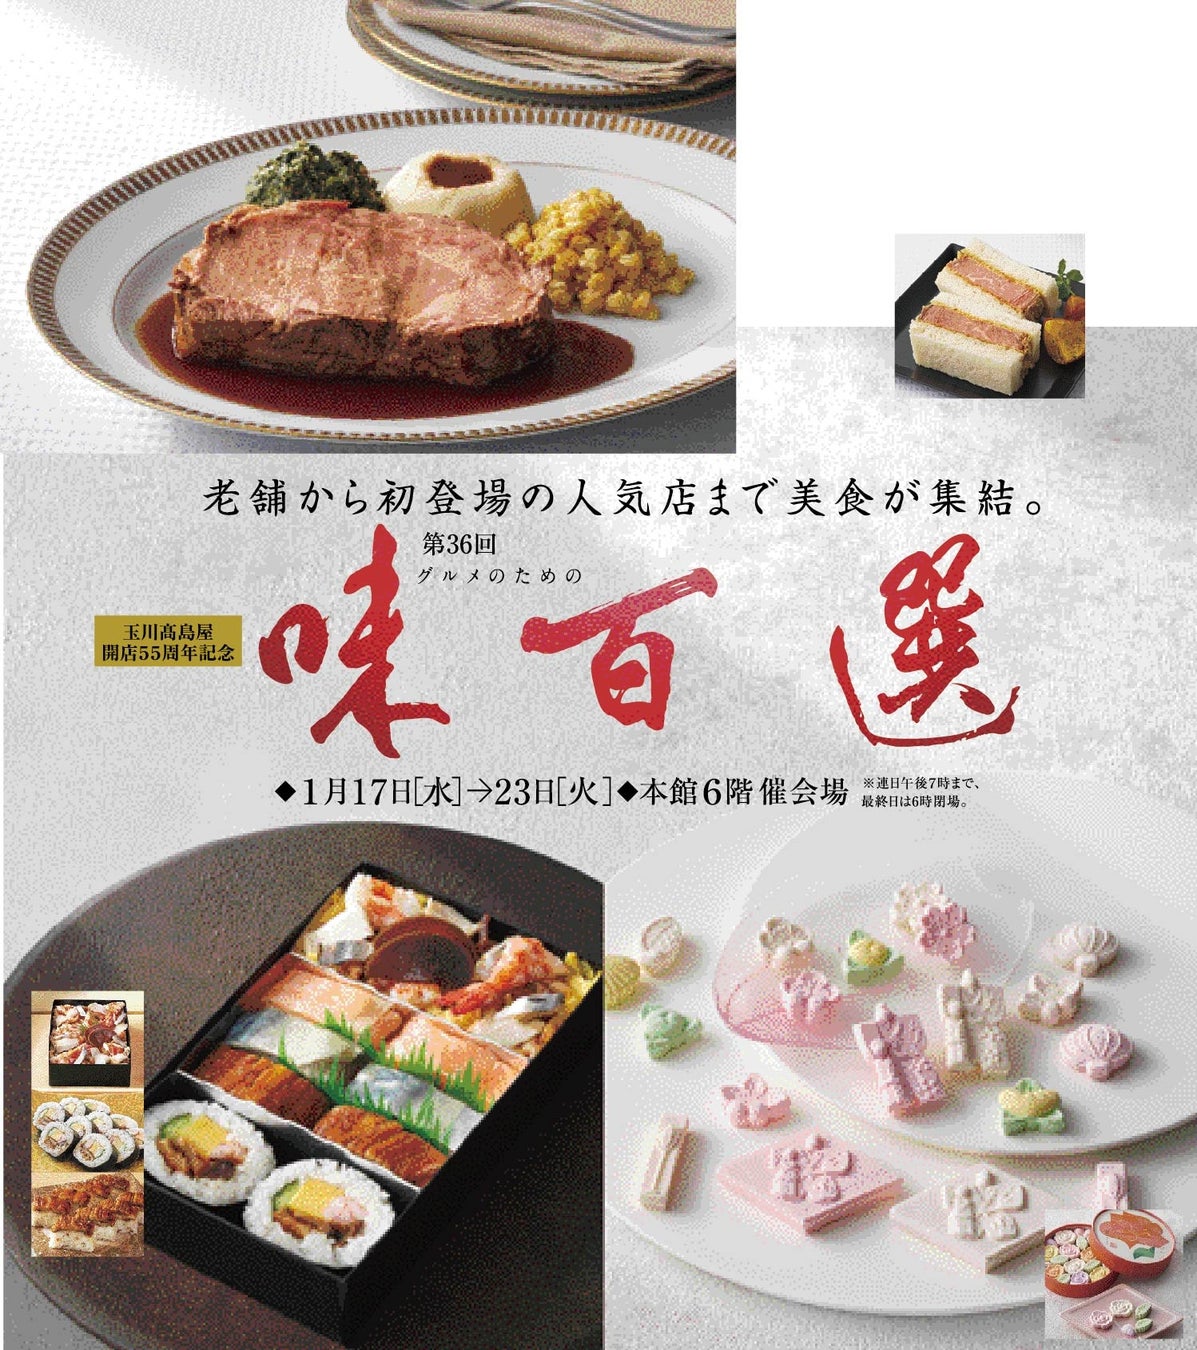 「PREMIUMゆうやけベリー」が初お目見え！福島の食の魅力をたっぷりとご紹介！！「ゆうやけベリー×福、笑い」ふくしまプライド。プレミアムフェア